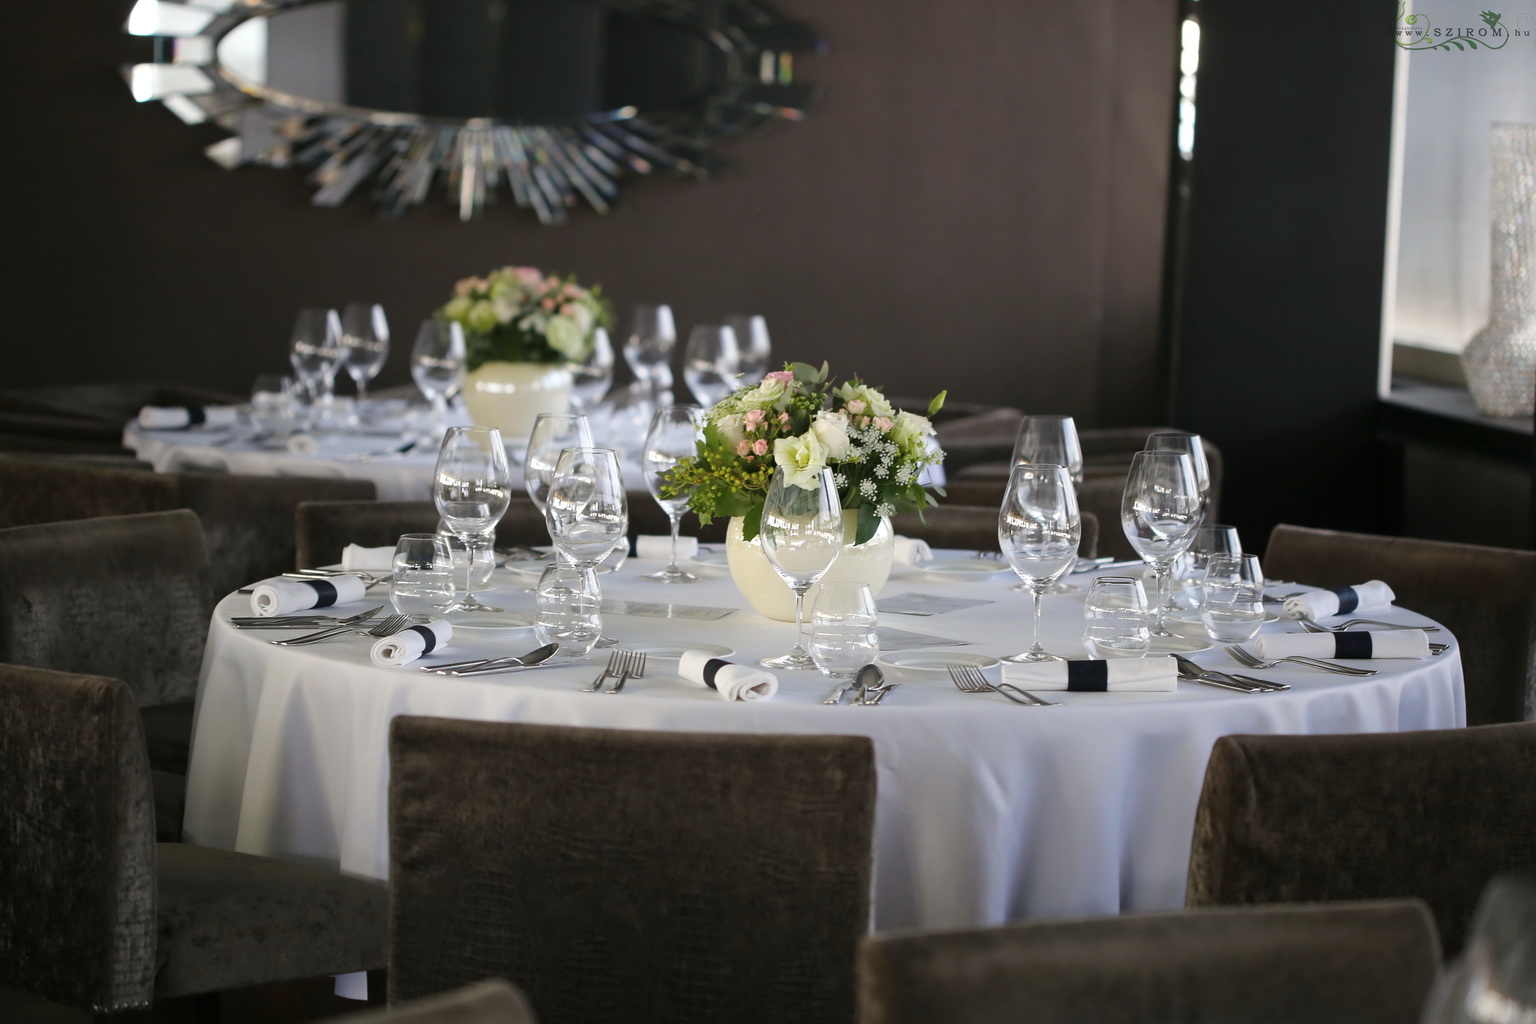 Esküvői asztaldísz kerámia gömbben, Spoon Budapest (rózsa, liziantusz, mezei virágok, barack, krém)